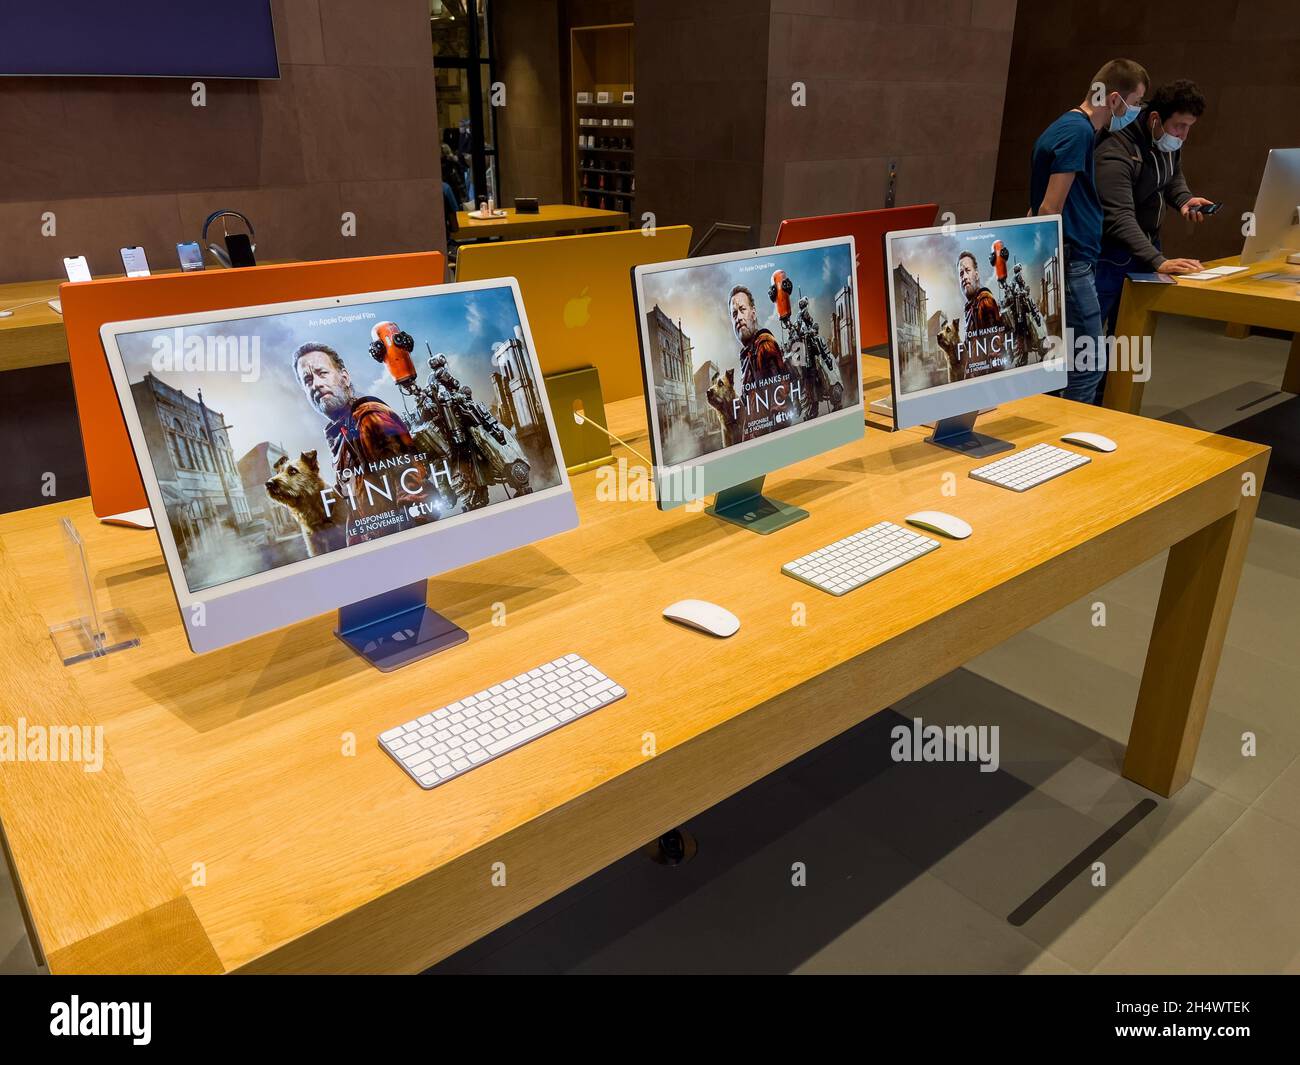 Finch film pubblicità sugli schermi di più recenti Apple iMac m1 Silicon all'interno di Apple Store senza clienti all'interno Foto Stock